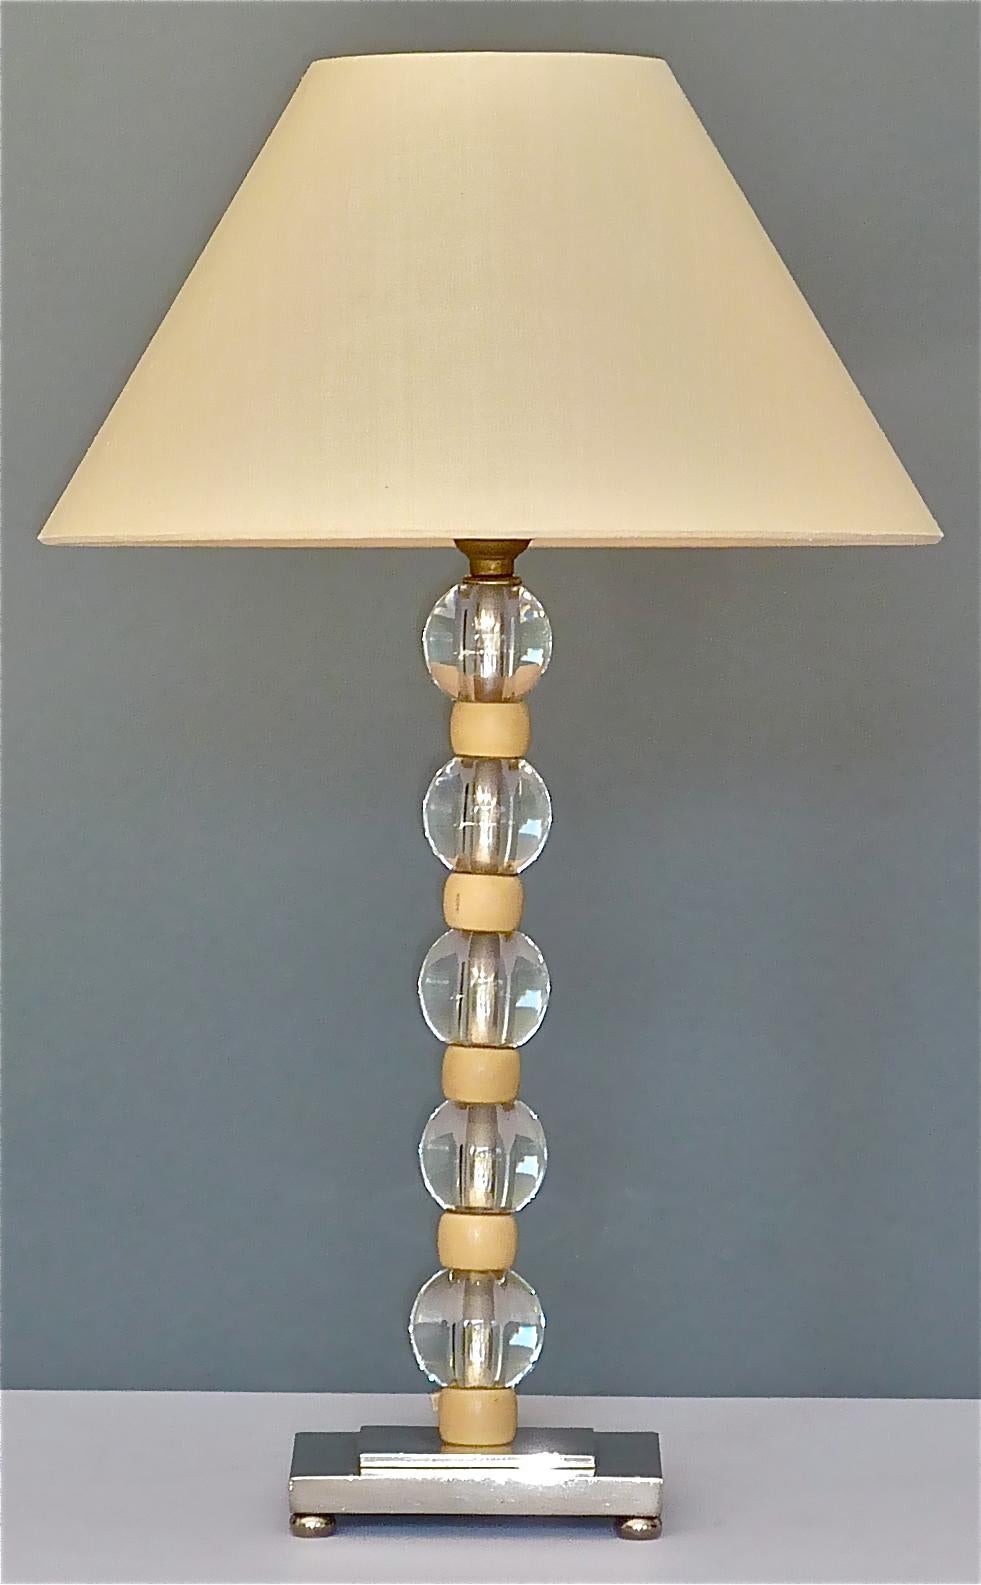 Belle lampe de table Art Déco moderniste française qui a été conçue et exécutée dans les années 1920-1930 en France et qui est attribuée ou très proche du style des merveilleuses créations de Jacques Adnet en coopération avec Baccarat ou Maison